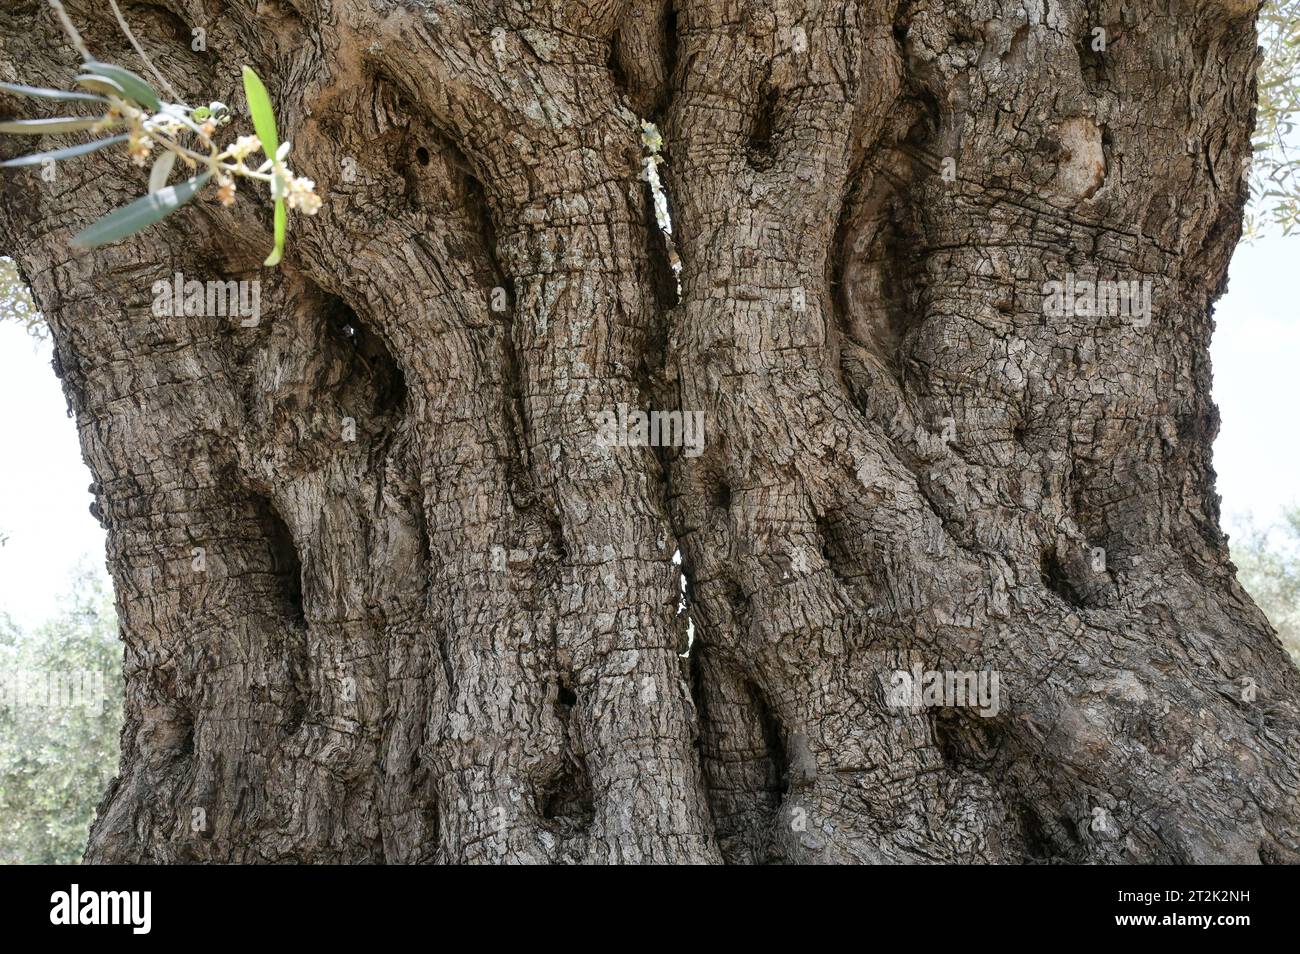 PALESTINE, Jenin, olive farming, 2000 year old olive tree from Roman empire era / PALÄSTINA, Jenin, Oliven Anbau, 2000 Jahre alter Olivenbaum aus der römischen Zeit Stock Photo